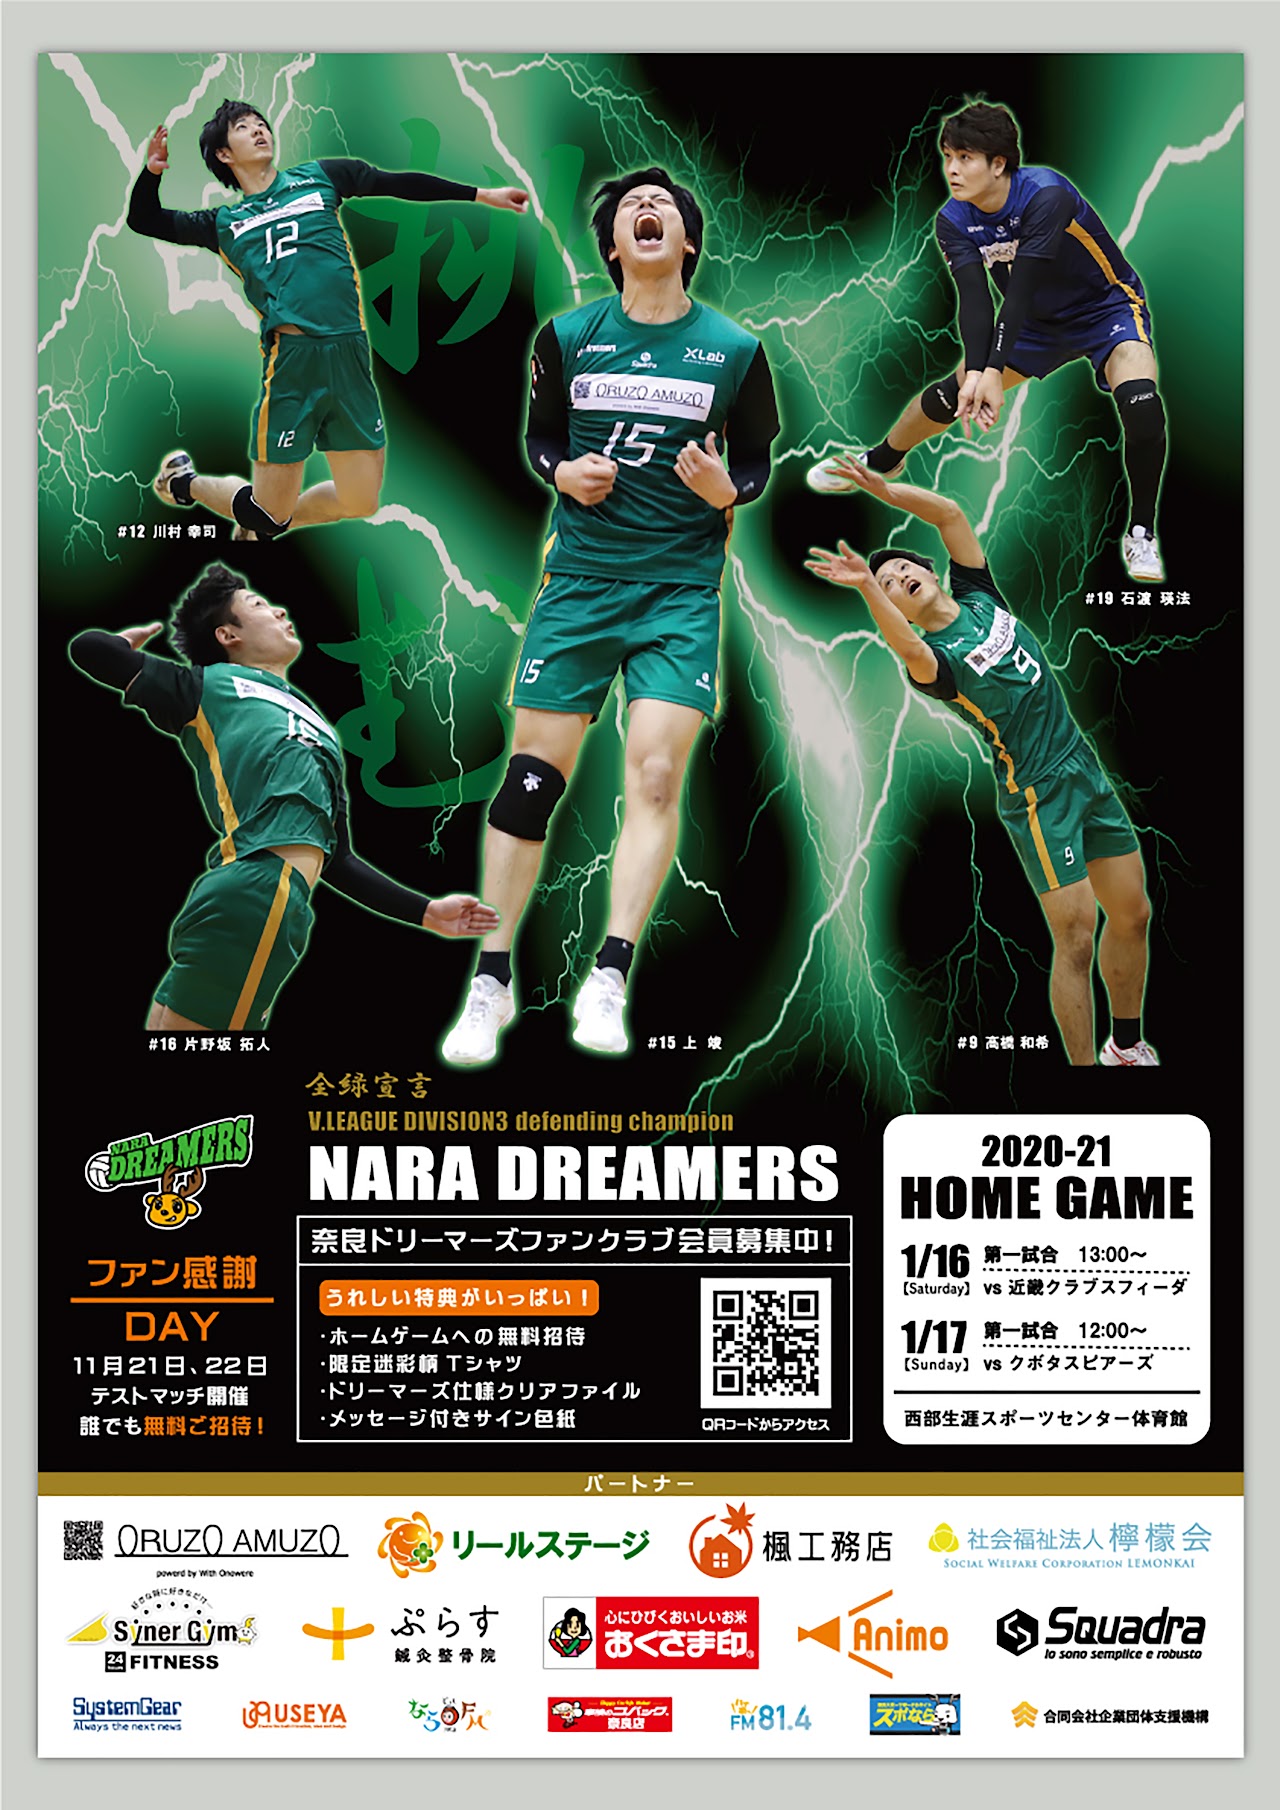 「奈良ドリーマーズ」2020-21 HOME GAME ポスター